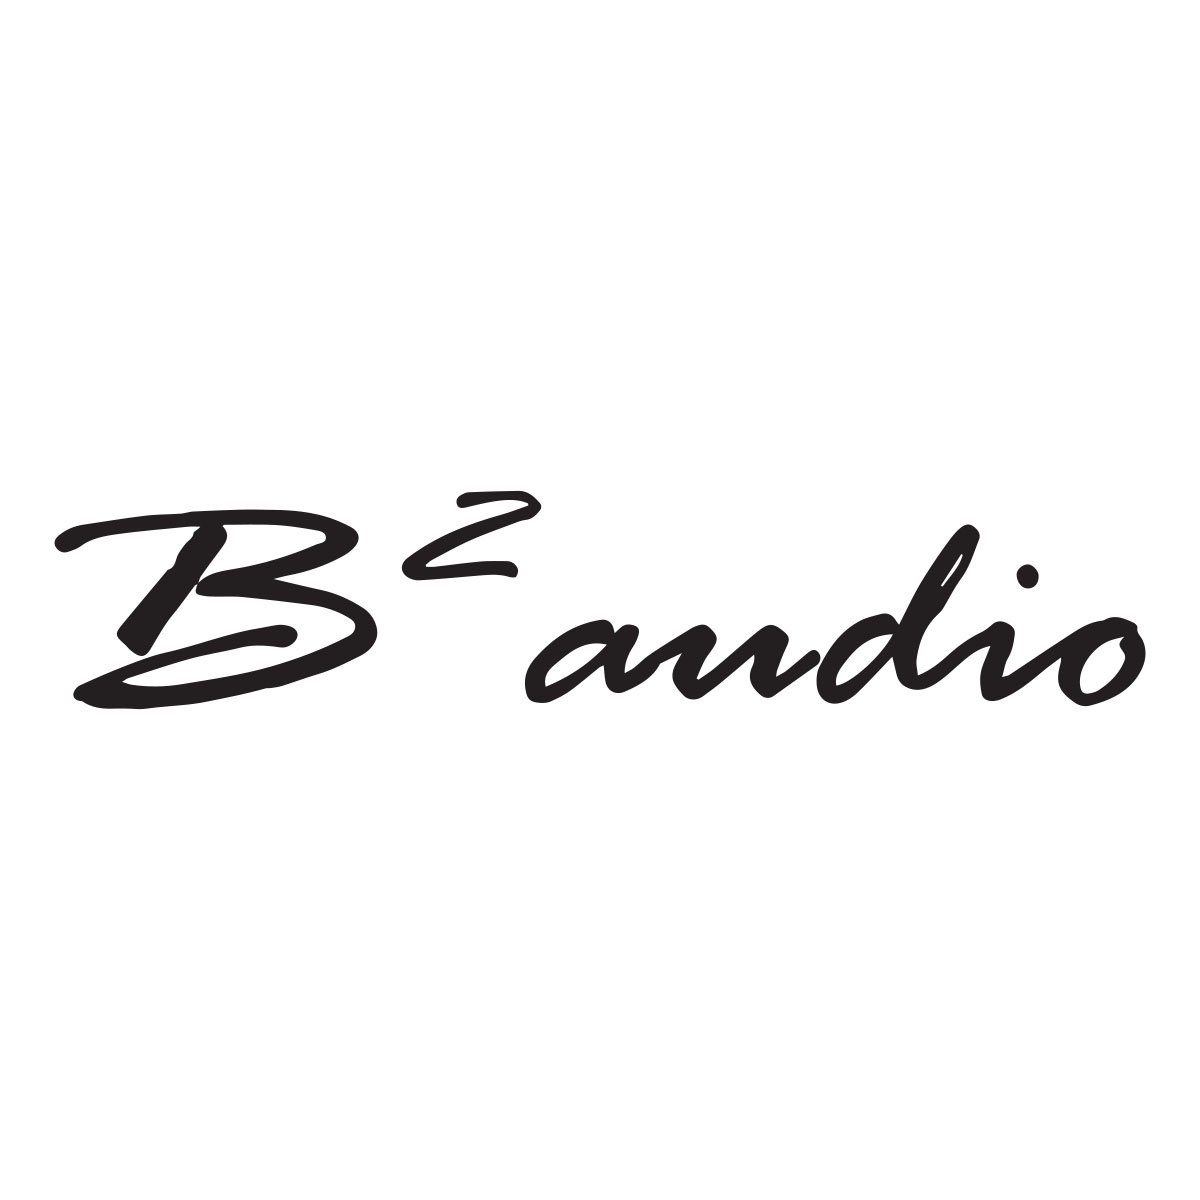 b2 audio